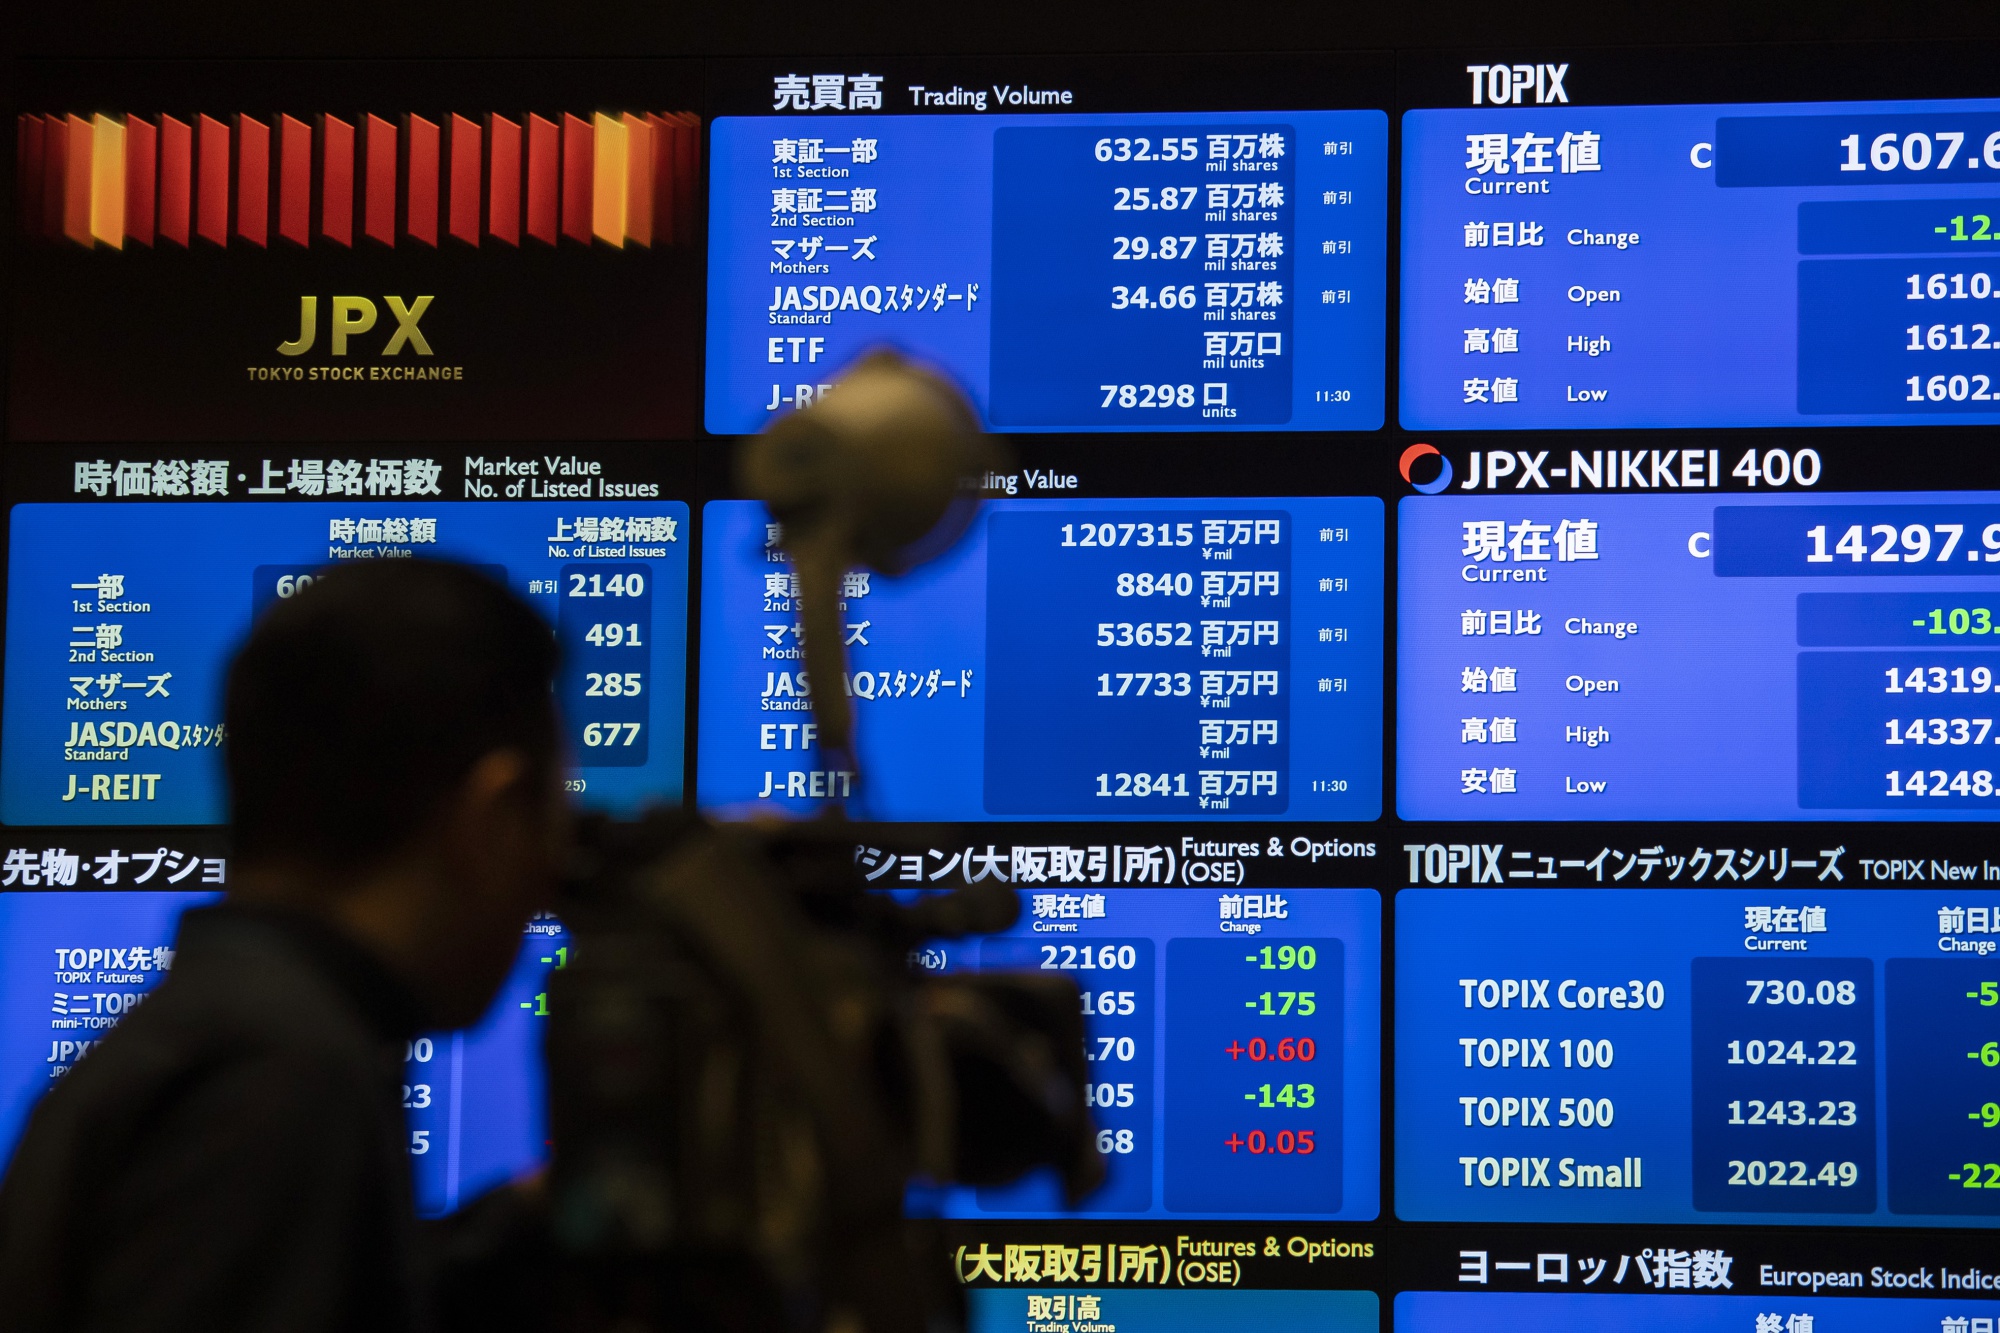 アイ アール ジャパンの株価急伸 安倍政権の成長戦略が追い風 Bloomberg